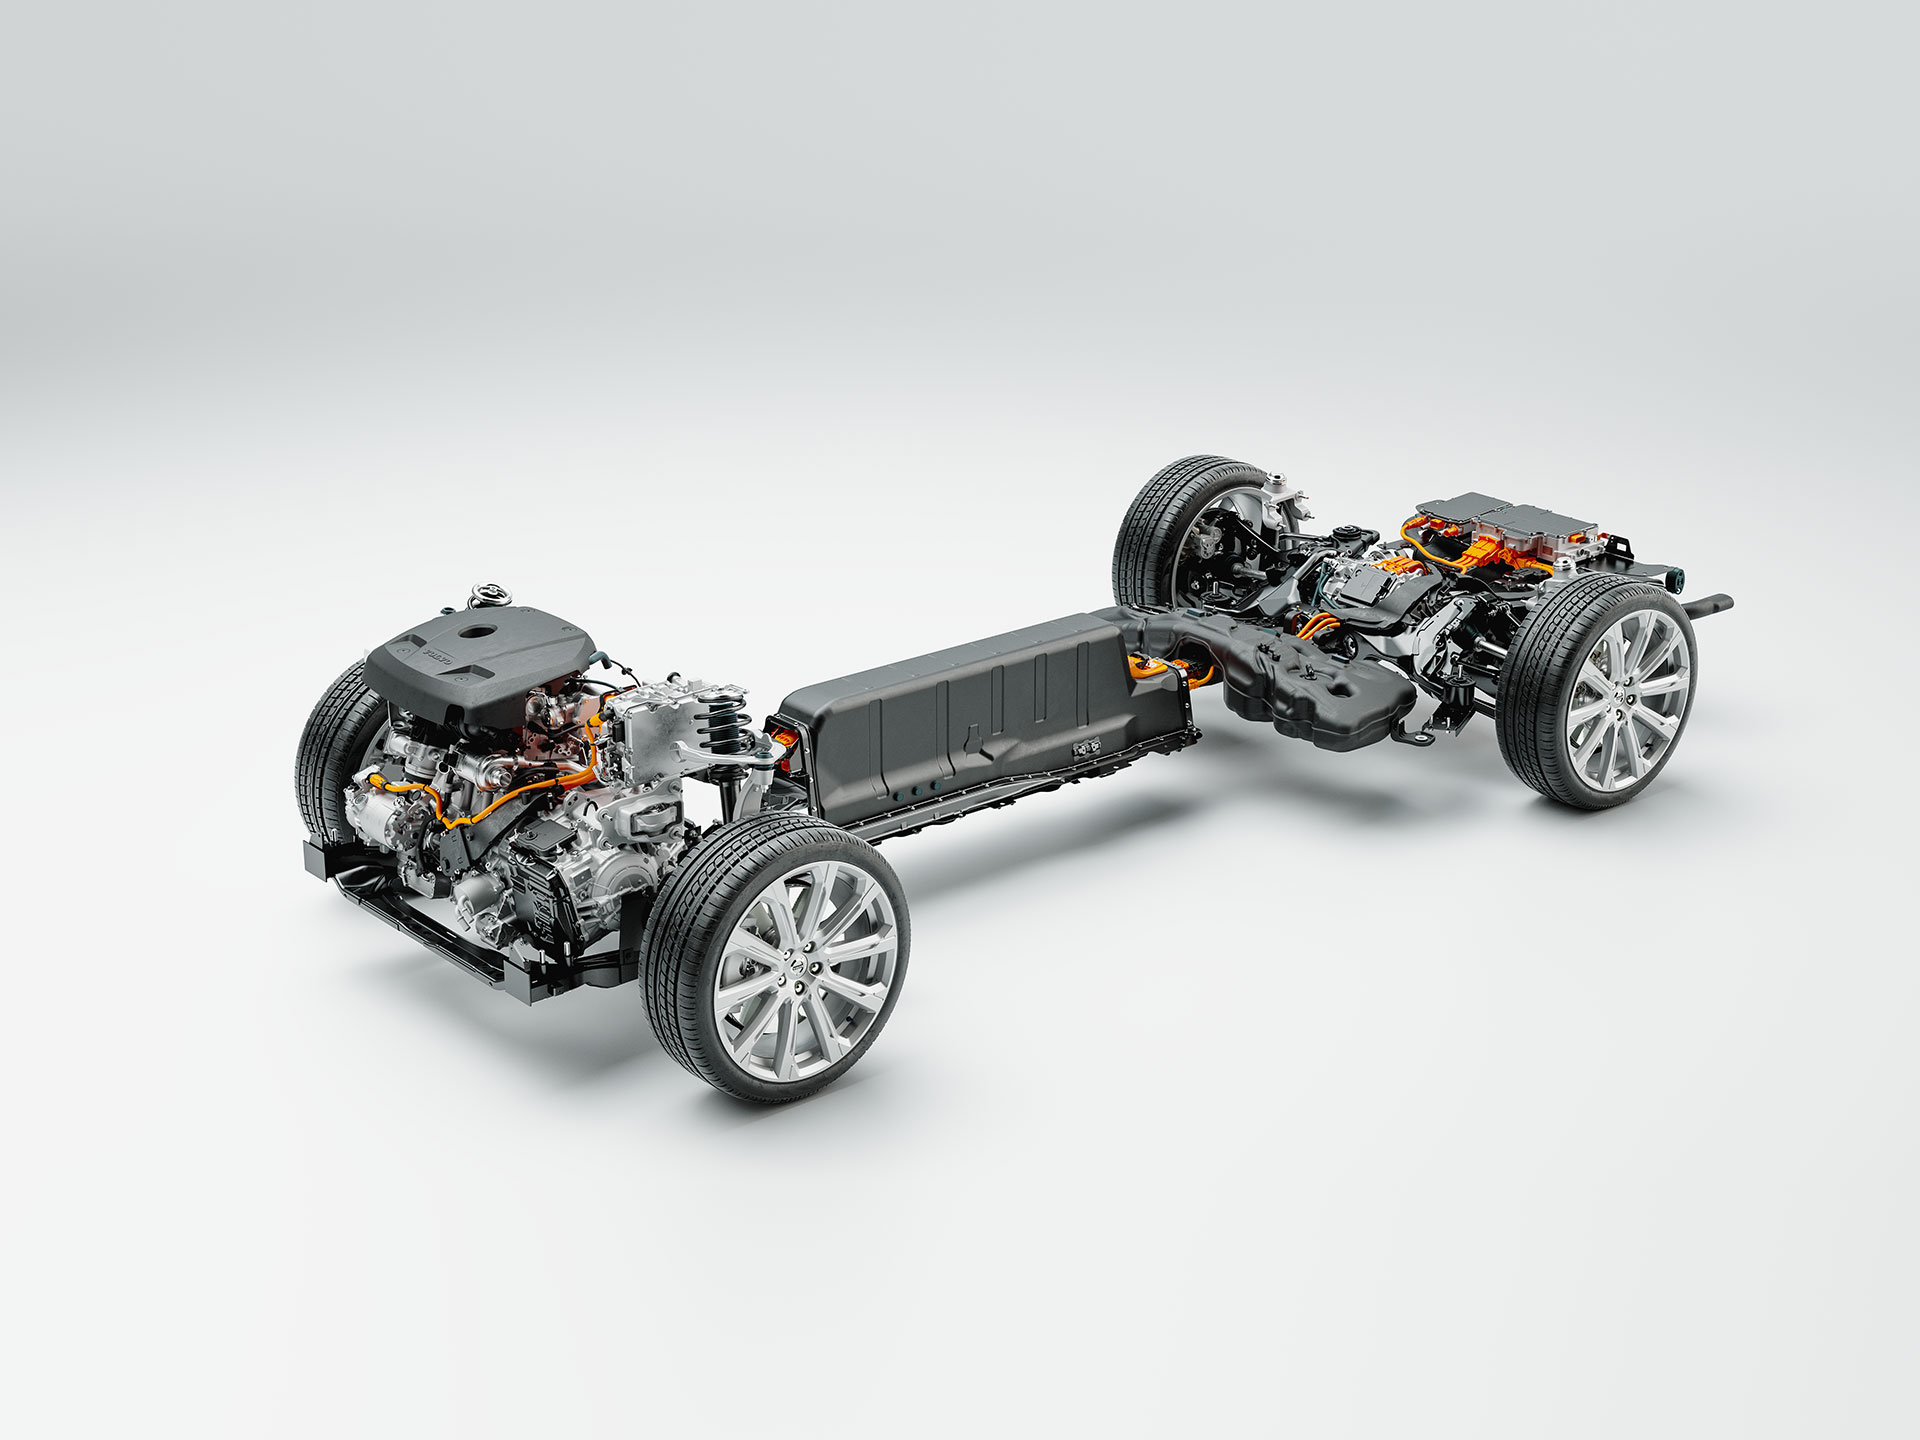 Illustration technique détaillée du châssis, de la batterie et du groupe motopropulseur d'un hybride rechargeable Volvo.